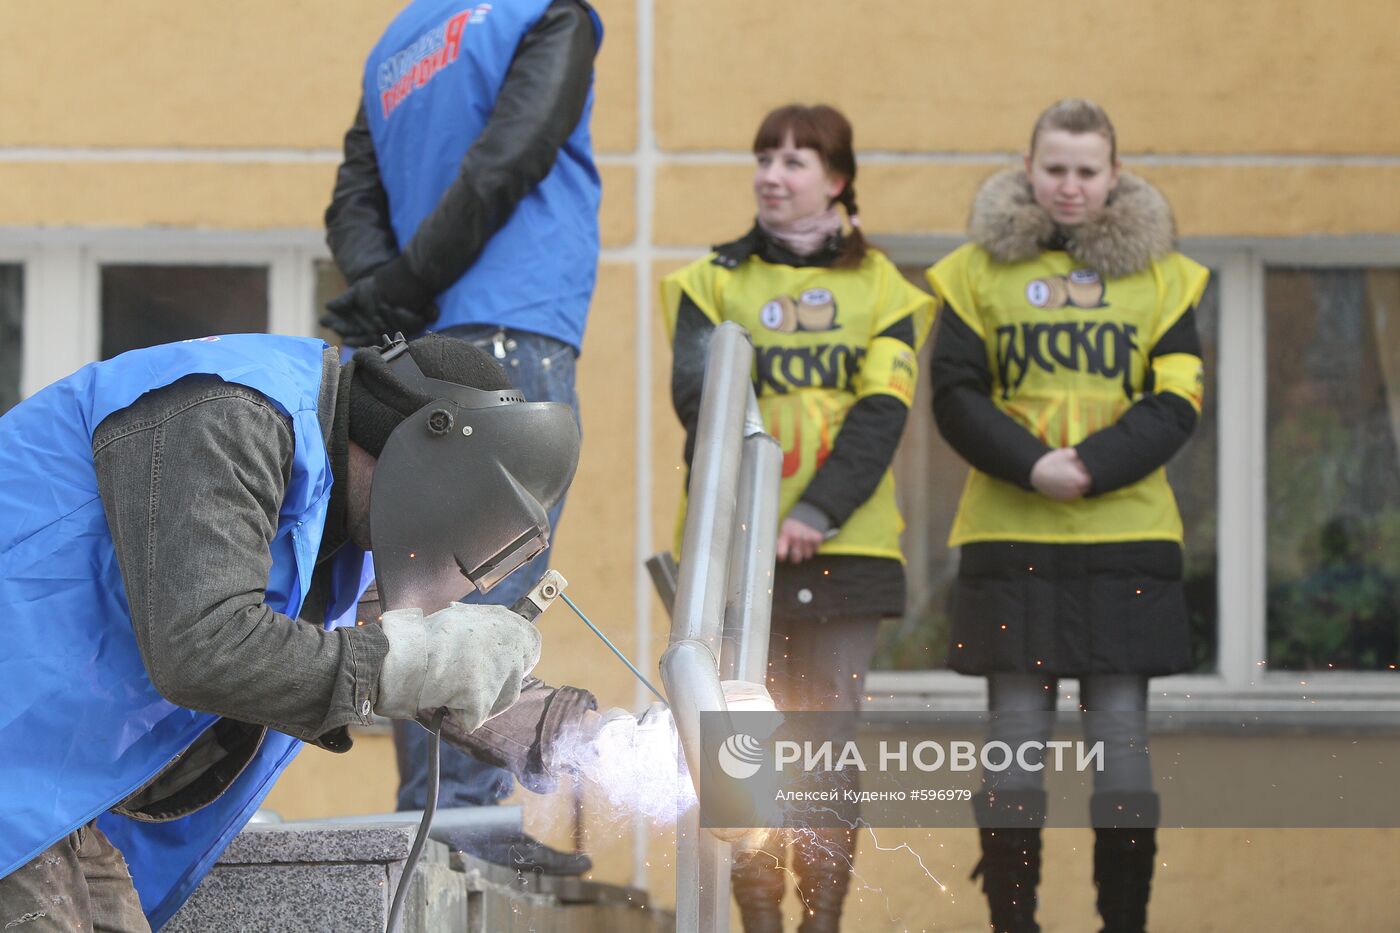 Установка пандуса для инвалидов в Московской области